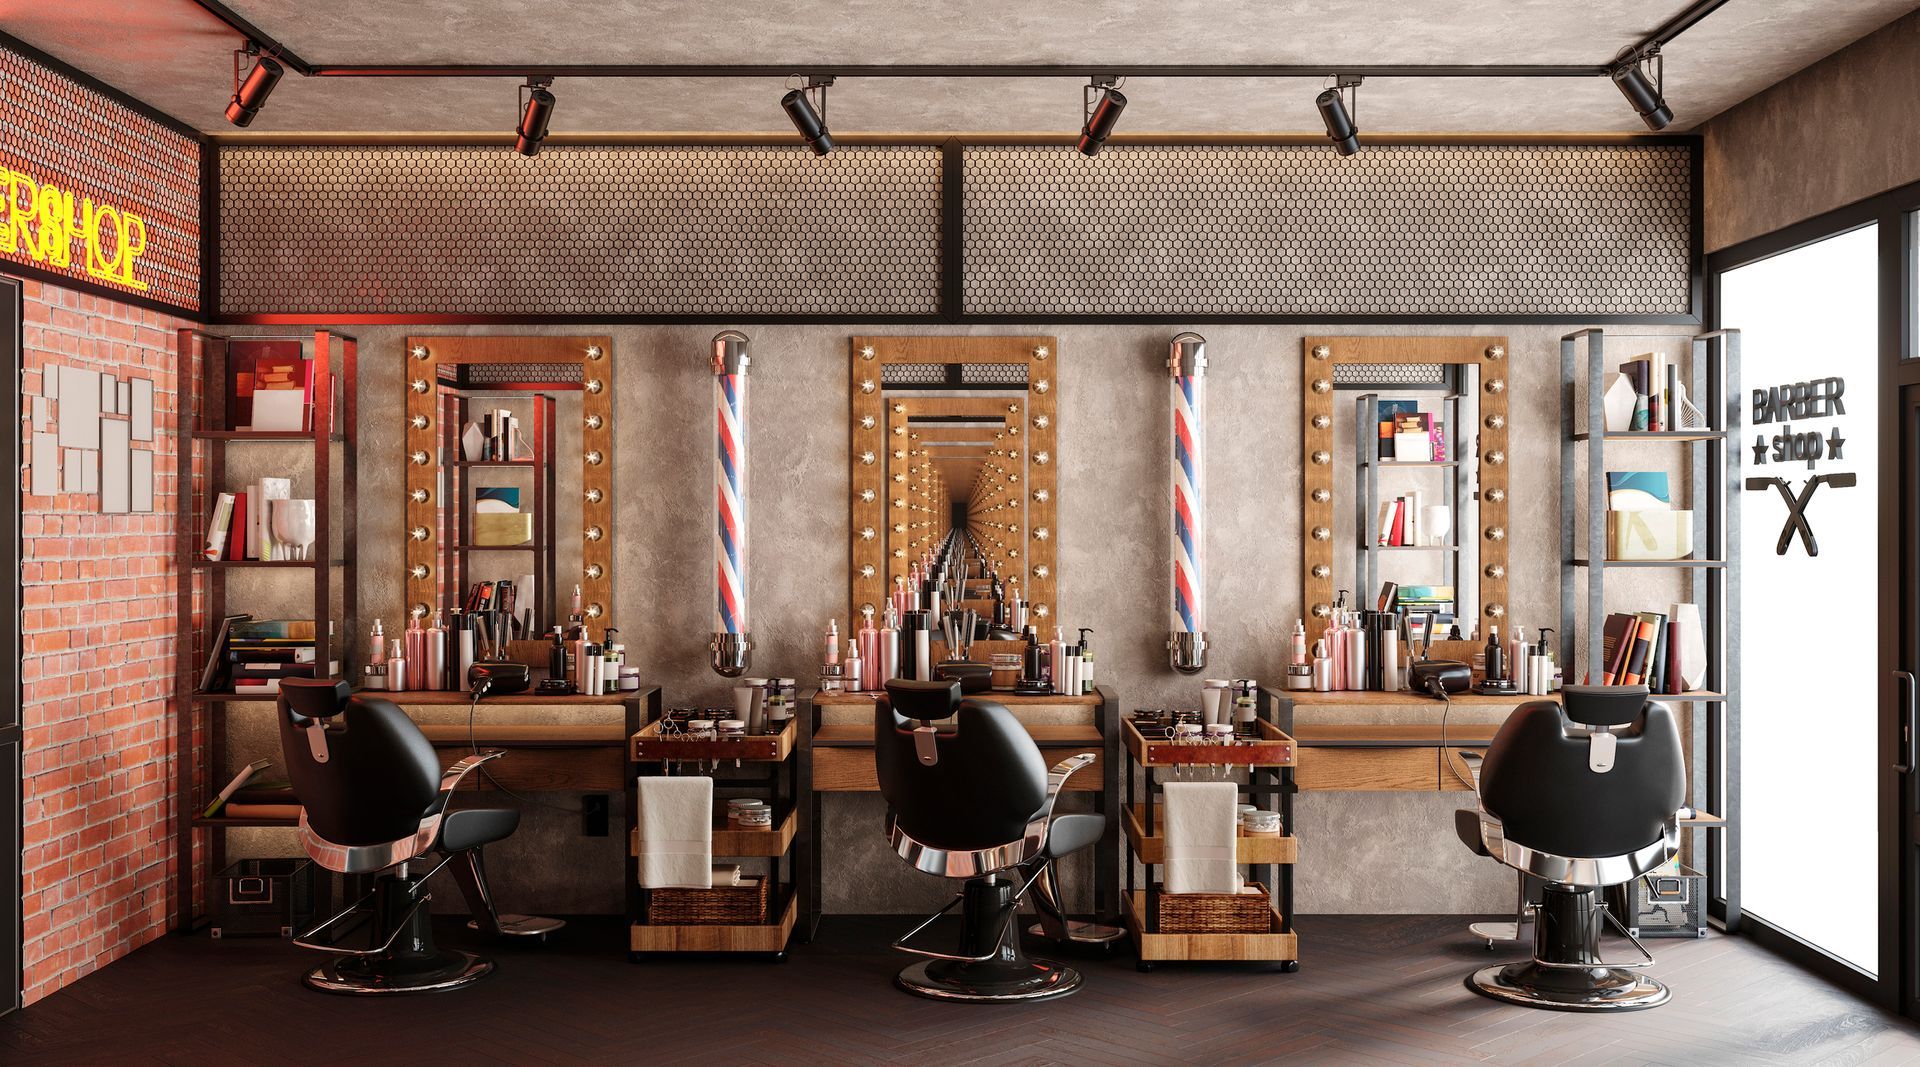 Barbershop Working Place — Pinellas Park, FL — Original Groomer Barbershop